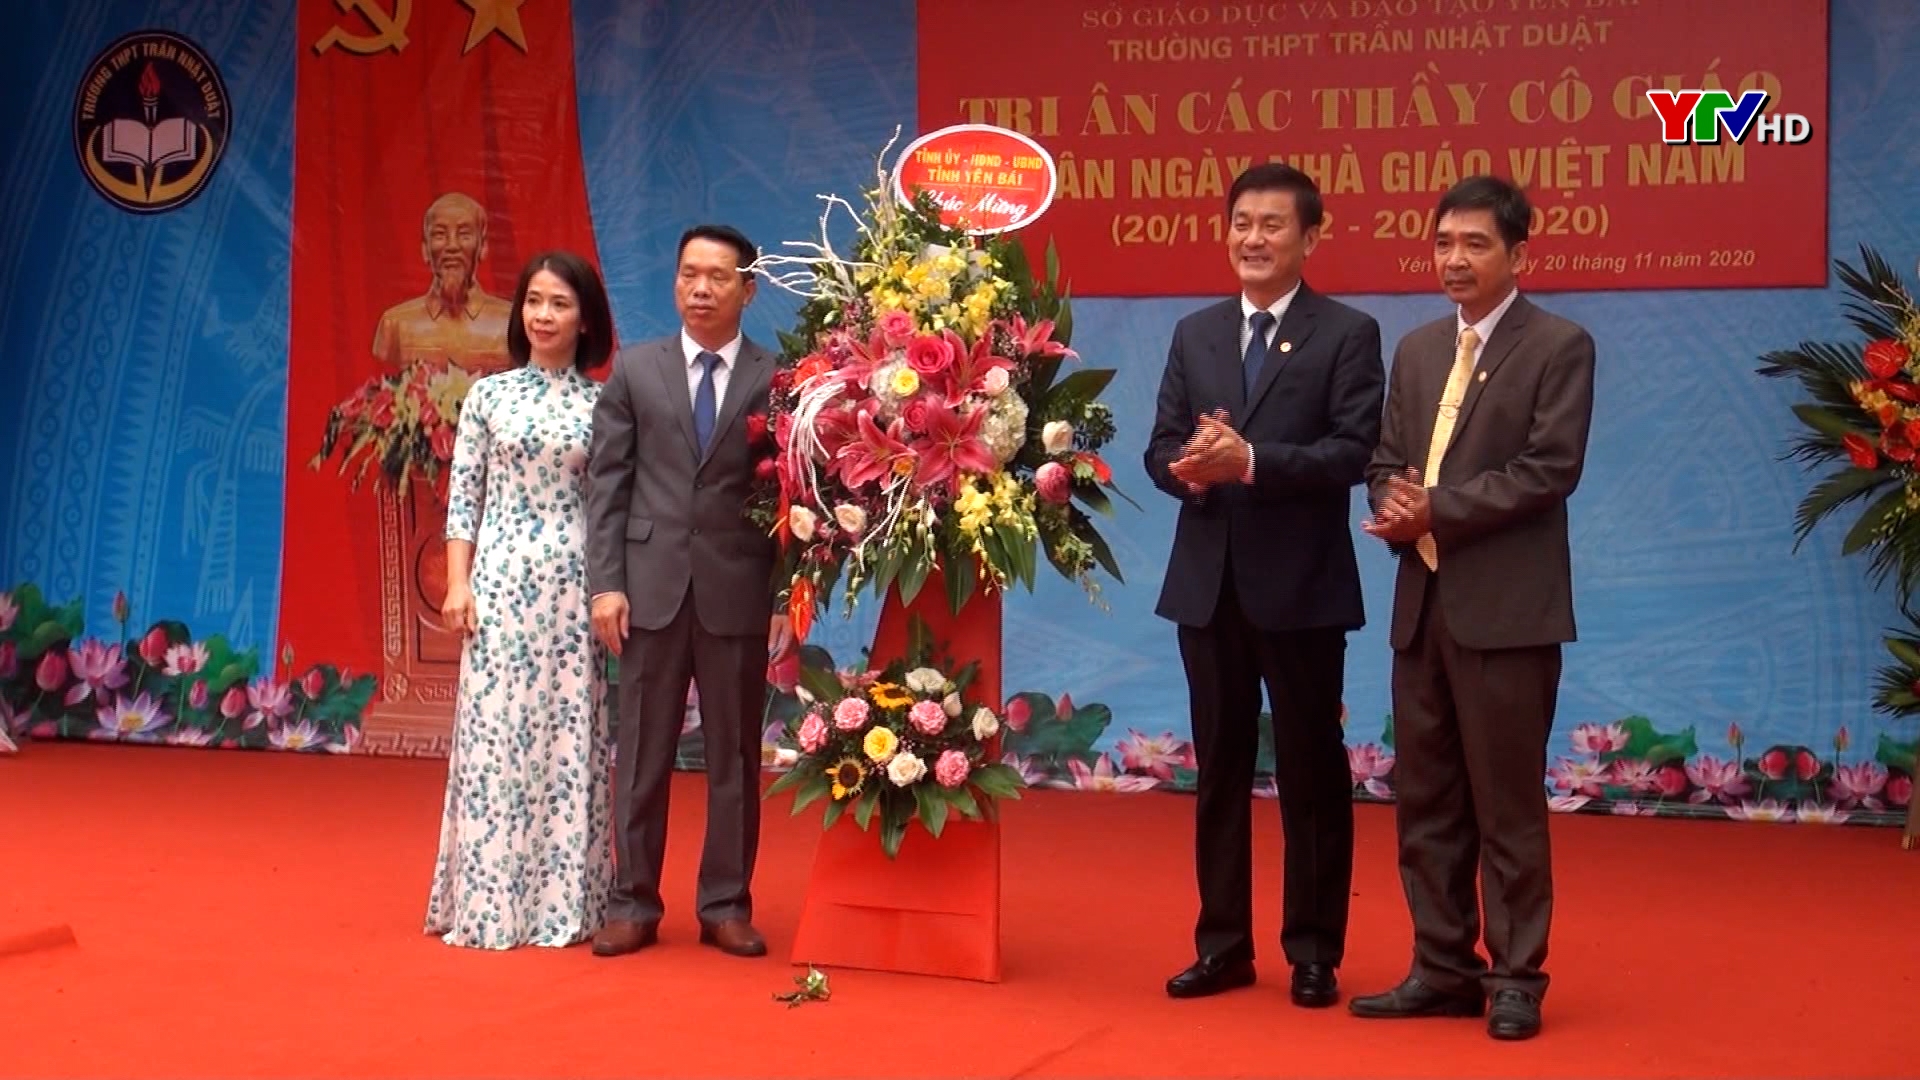 Đồng chí Nguyễn Chiến Thắng - PCT UBND tỉnh dự Chương trình tri ân các thầy cô giáo tại Trường THPT Trần Nhật Duật, huyện Yên Bình.